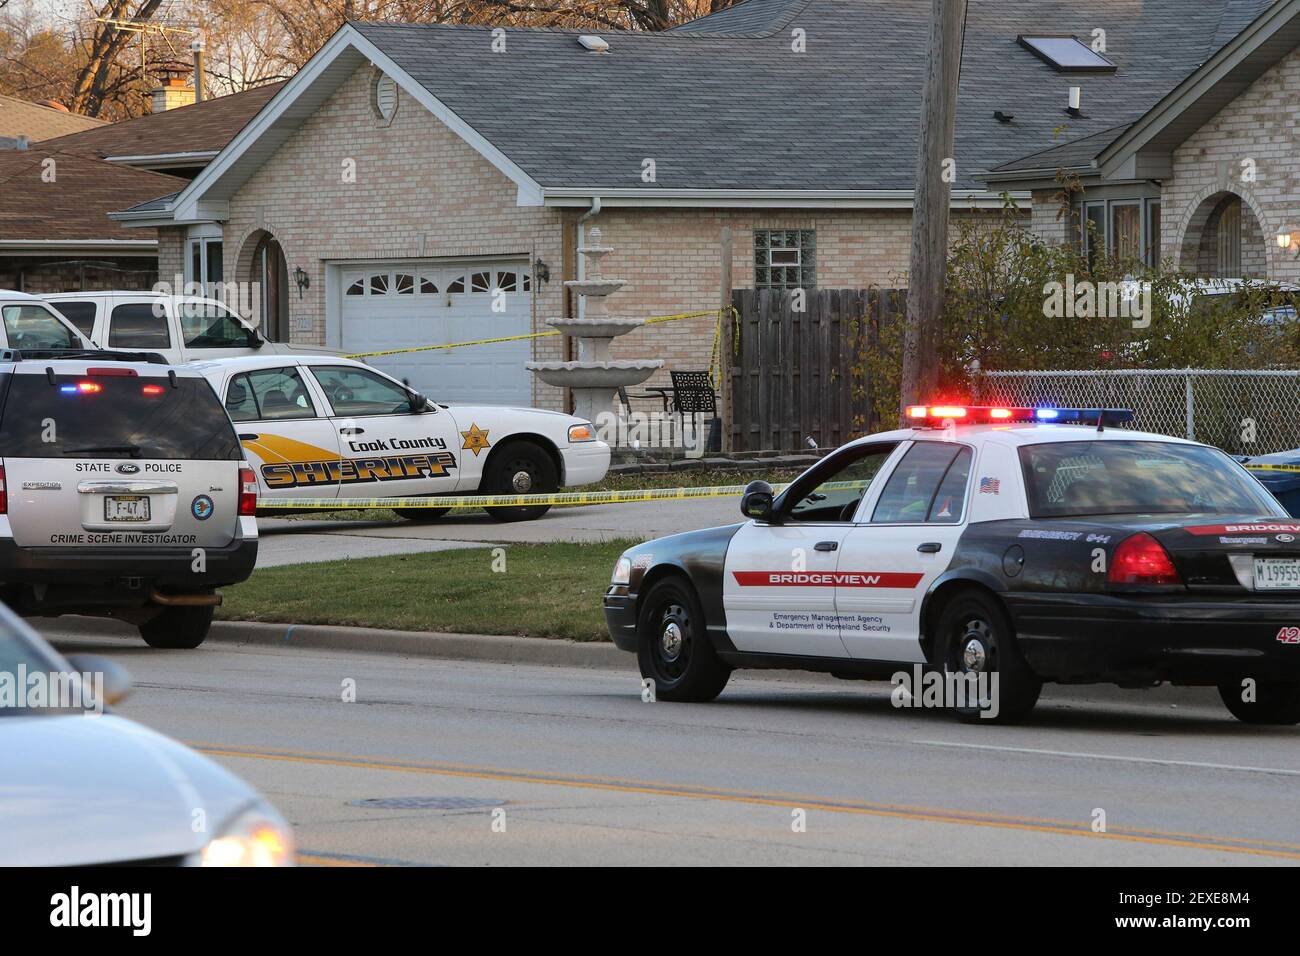 La policía estatal y la policía de Bridgeview investigan una escena de crimen en una casa en el bloque 7200 de South Roberts Road en Bridgeview, Illinois, el lunes, 16 de noviembre de 2015, después de un tiroteo ocurrió en la casa la noche anterior. Un oficial correccional del condado de Cook de Berwyn al parecer se disparó hasta morir el domingo por la noche en la casa de Bridgeview después de disparar e hiriendo críticamente a dos residentes, incluida una mujer con la que había estado en una relación, dijo la policía. (Foto de Antonio Pérez/Chicago Tribune/TNS) *** por favor use crédito del campo de crédito *** Foto de stock